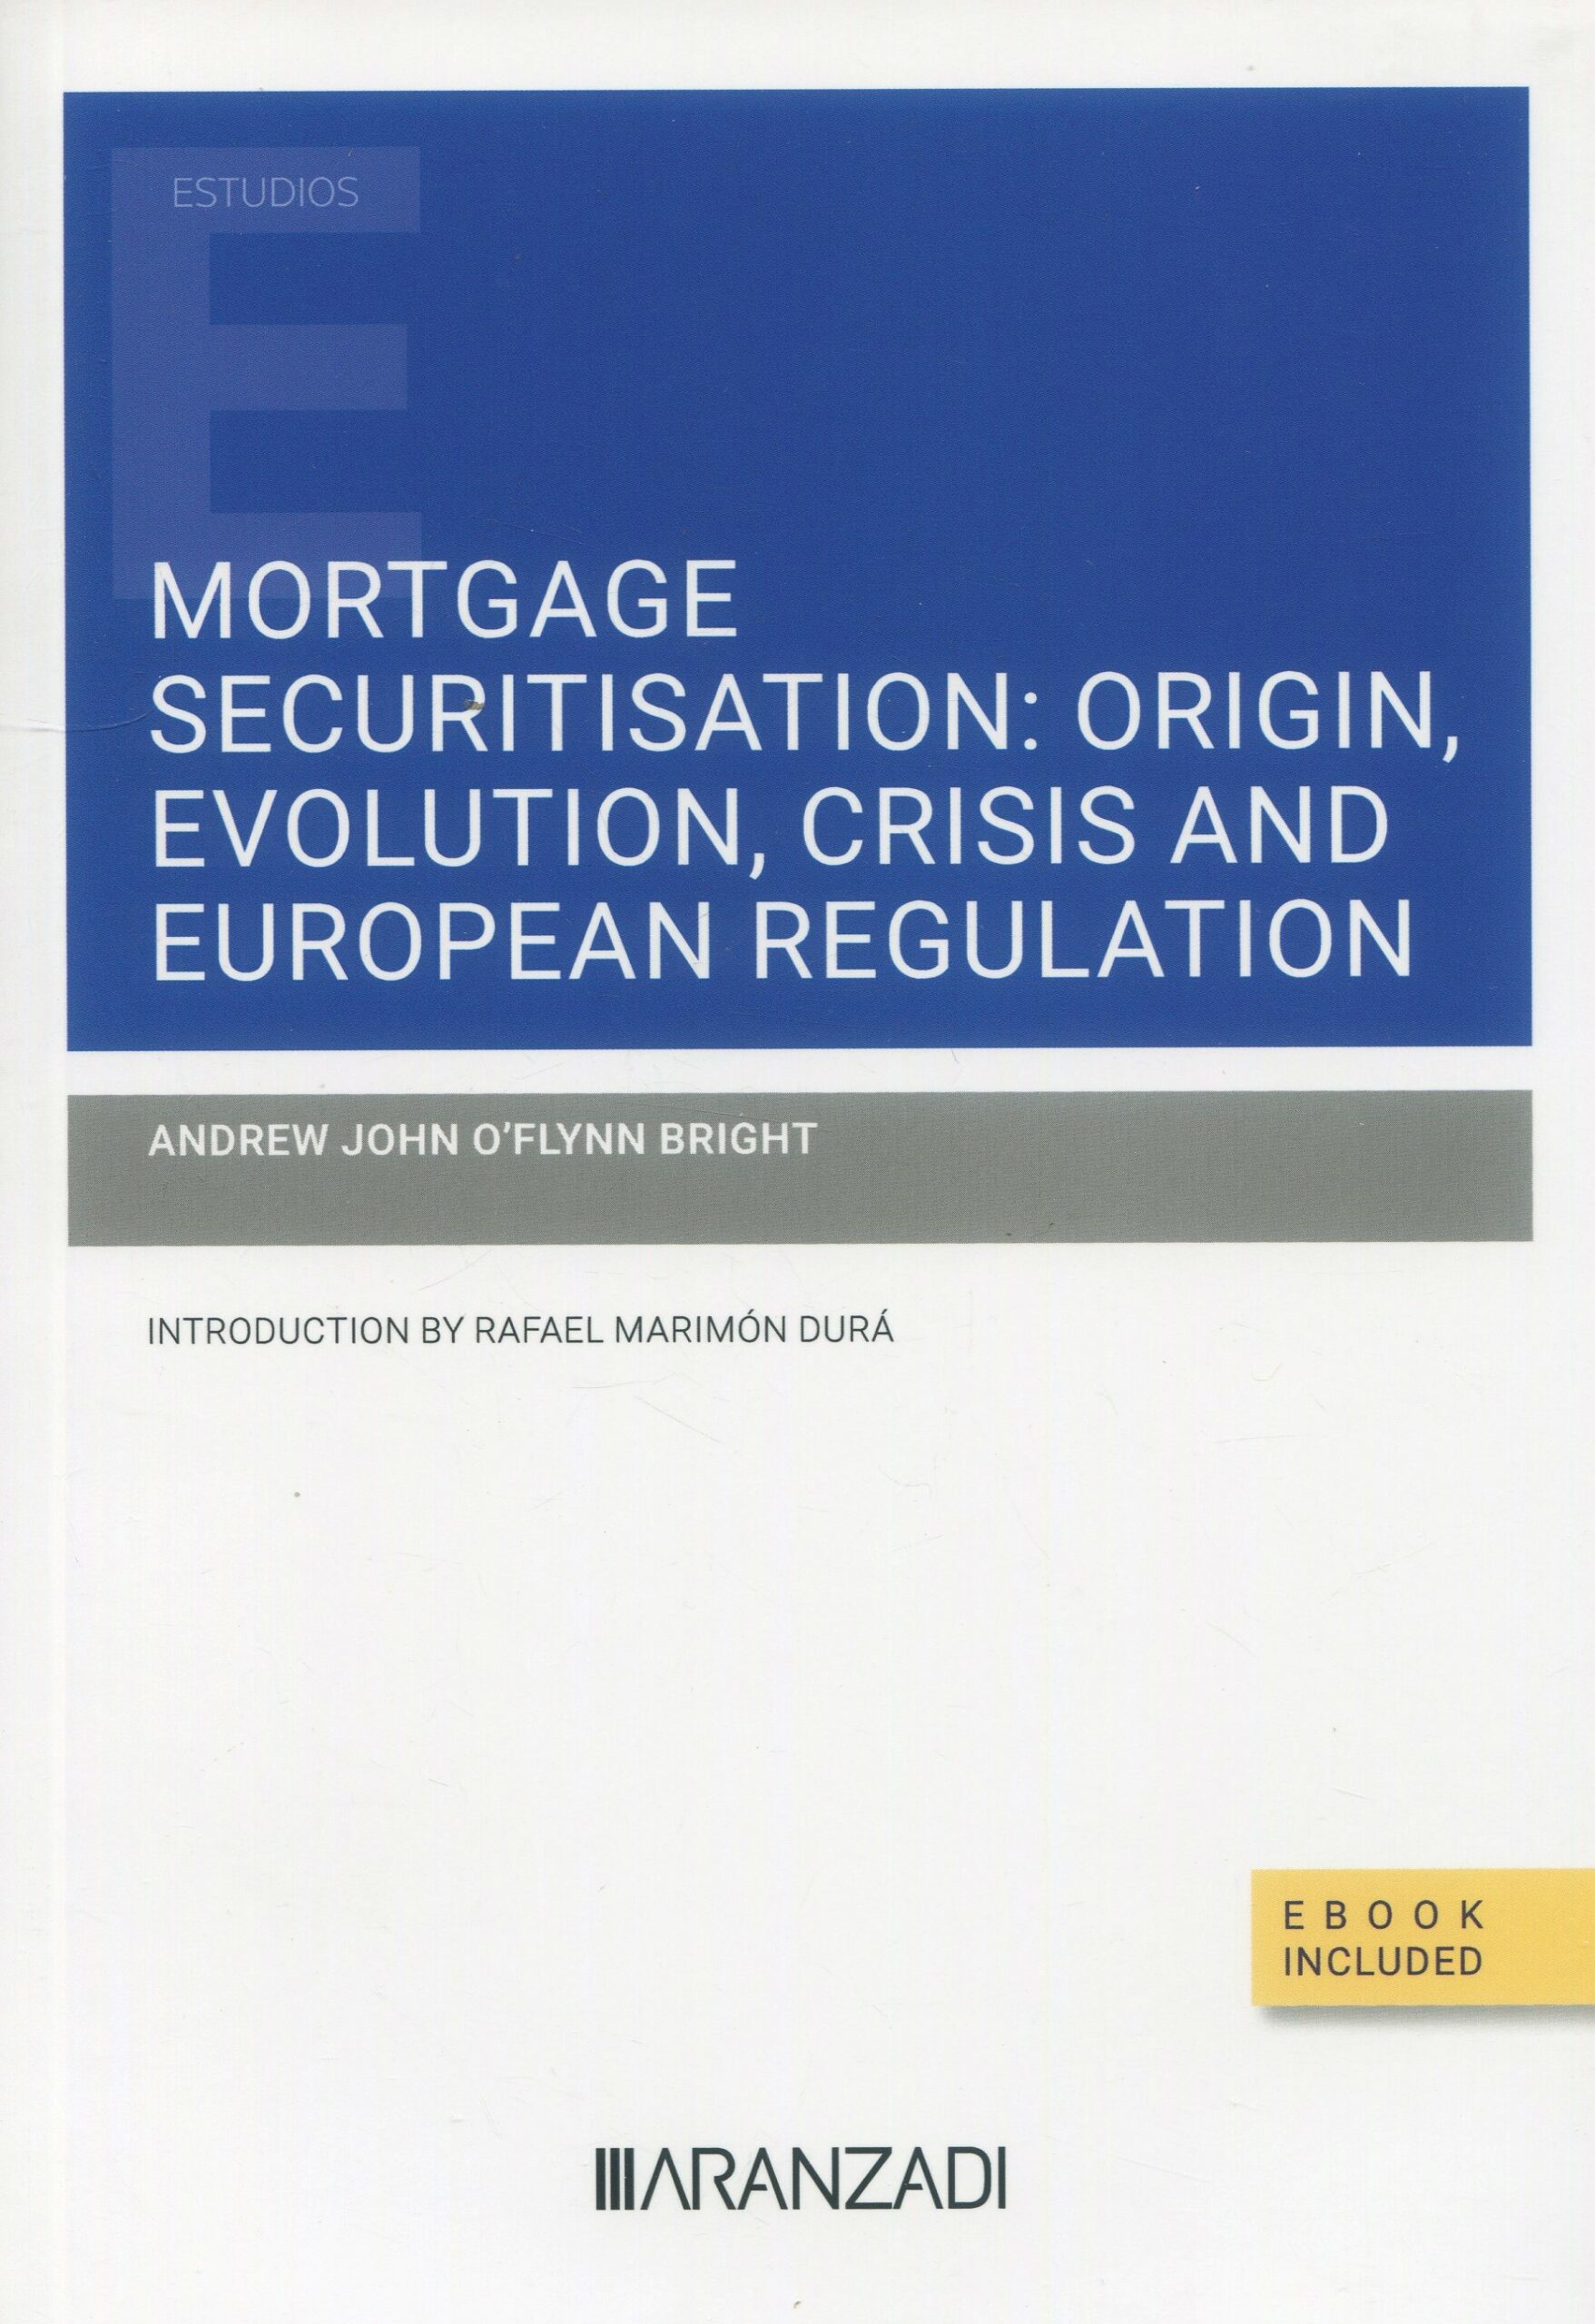 Imagen de portada del libro Mortgage securitisation